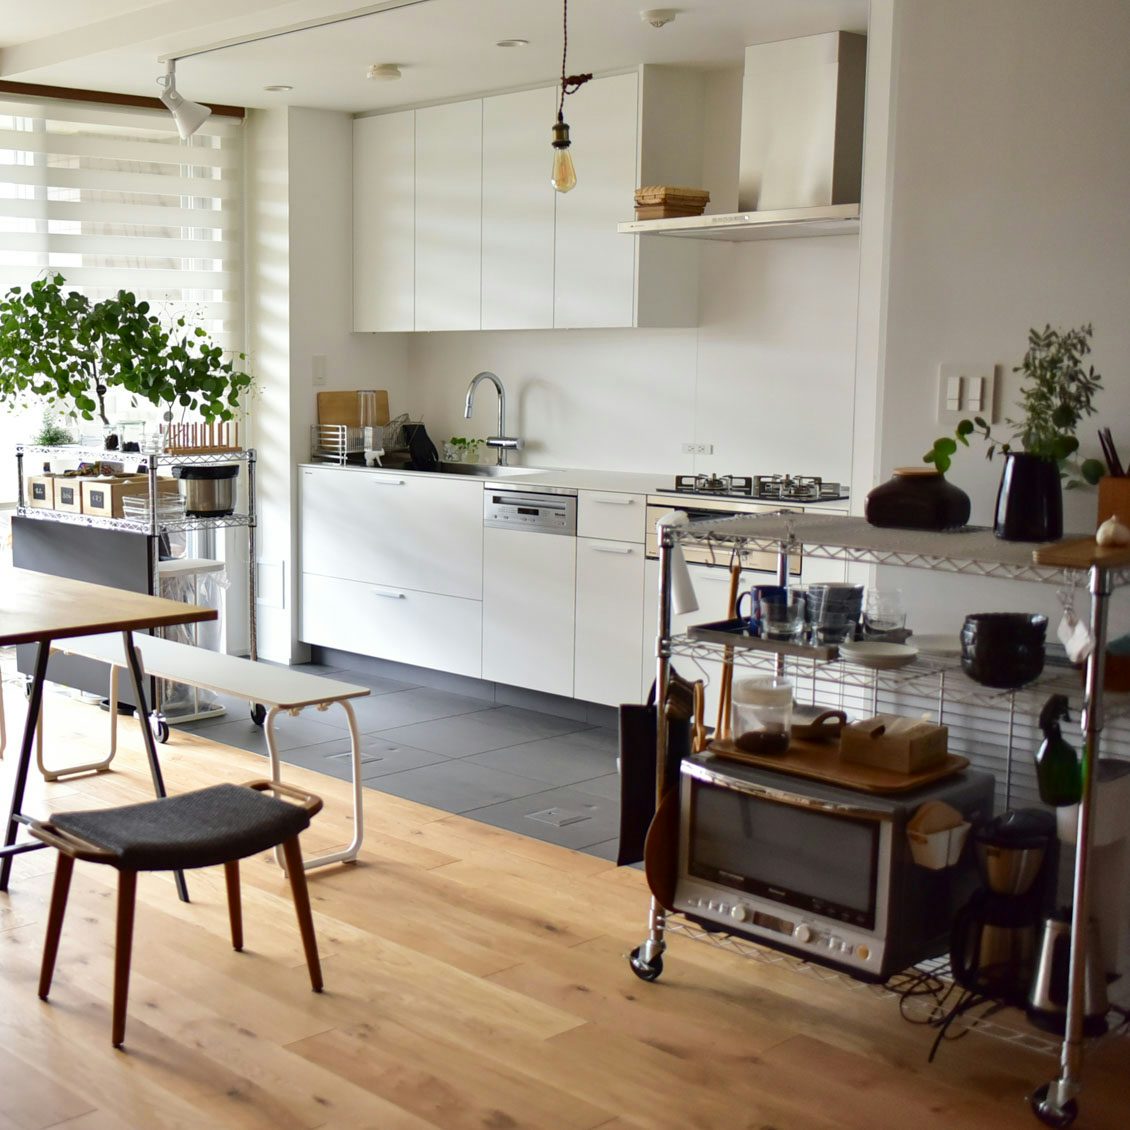 スチールラックがキッチンでは便利 食器棚など収納アイデア例 北欧 暮らしの道具店